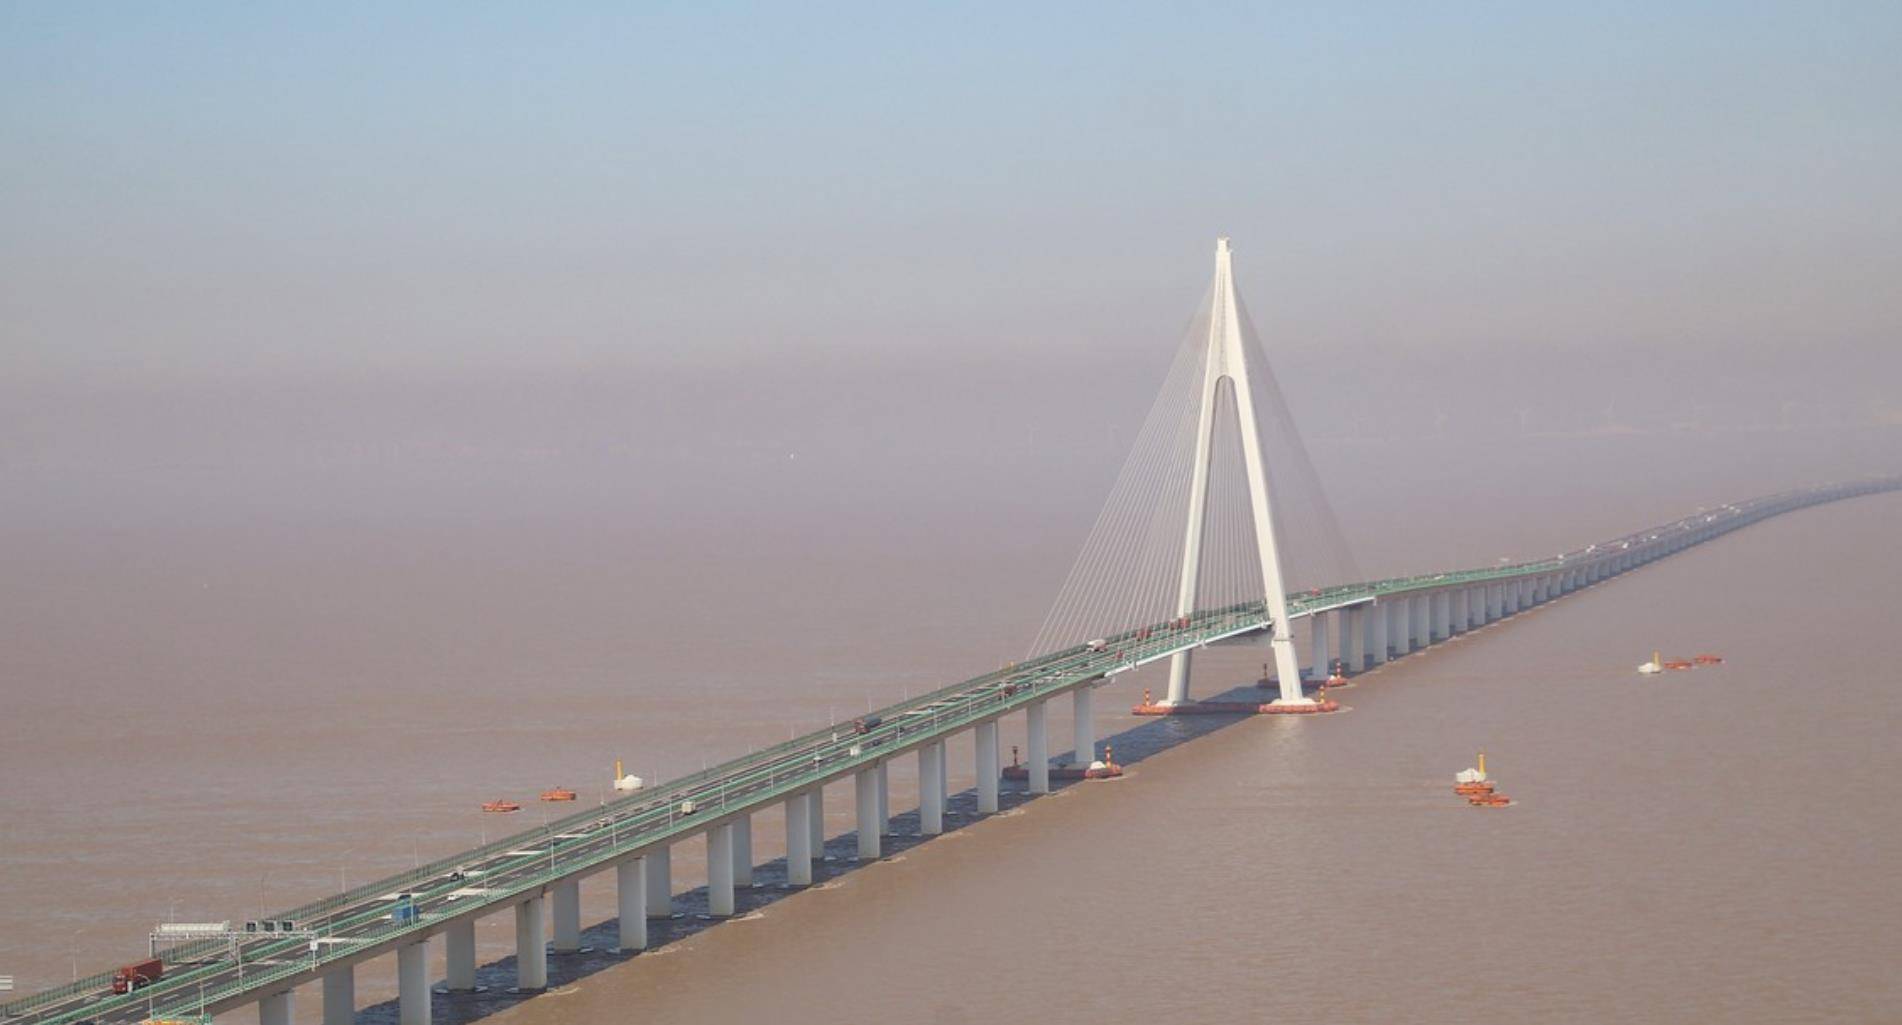 武汉桥梁建设的成就,是武汉科技自立自强的典范